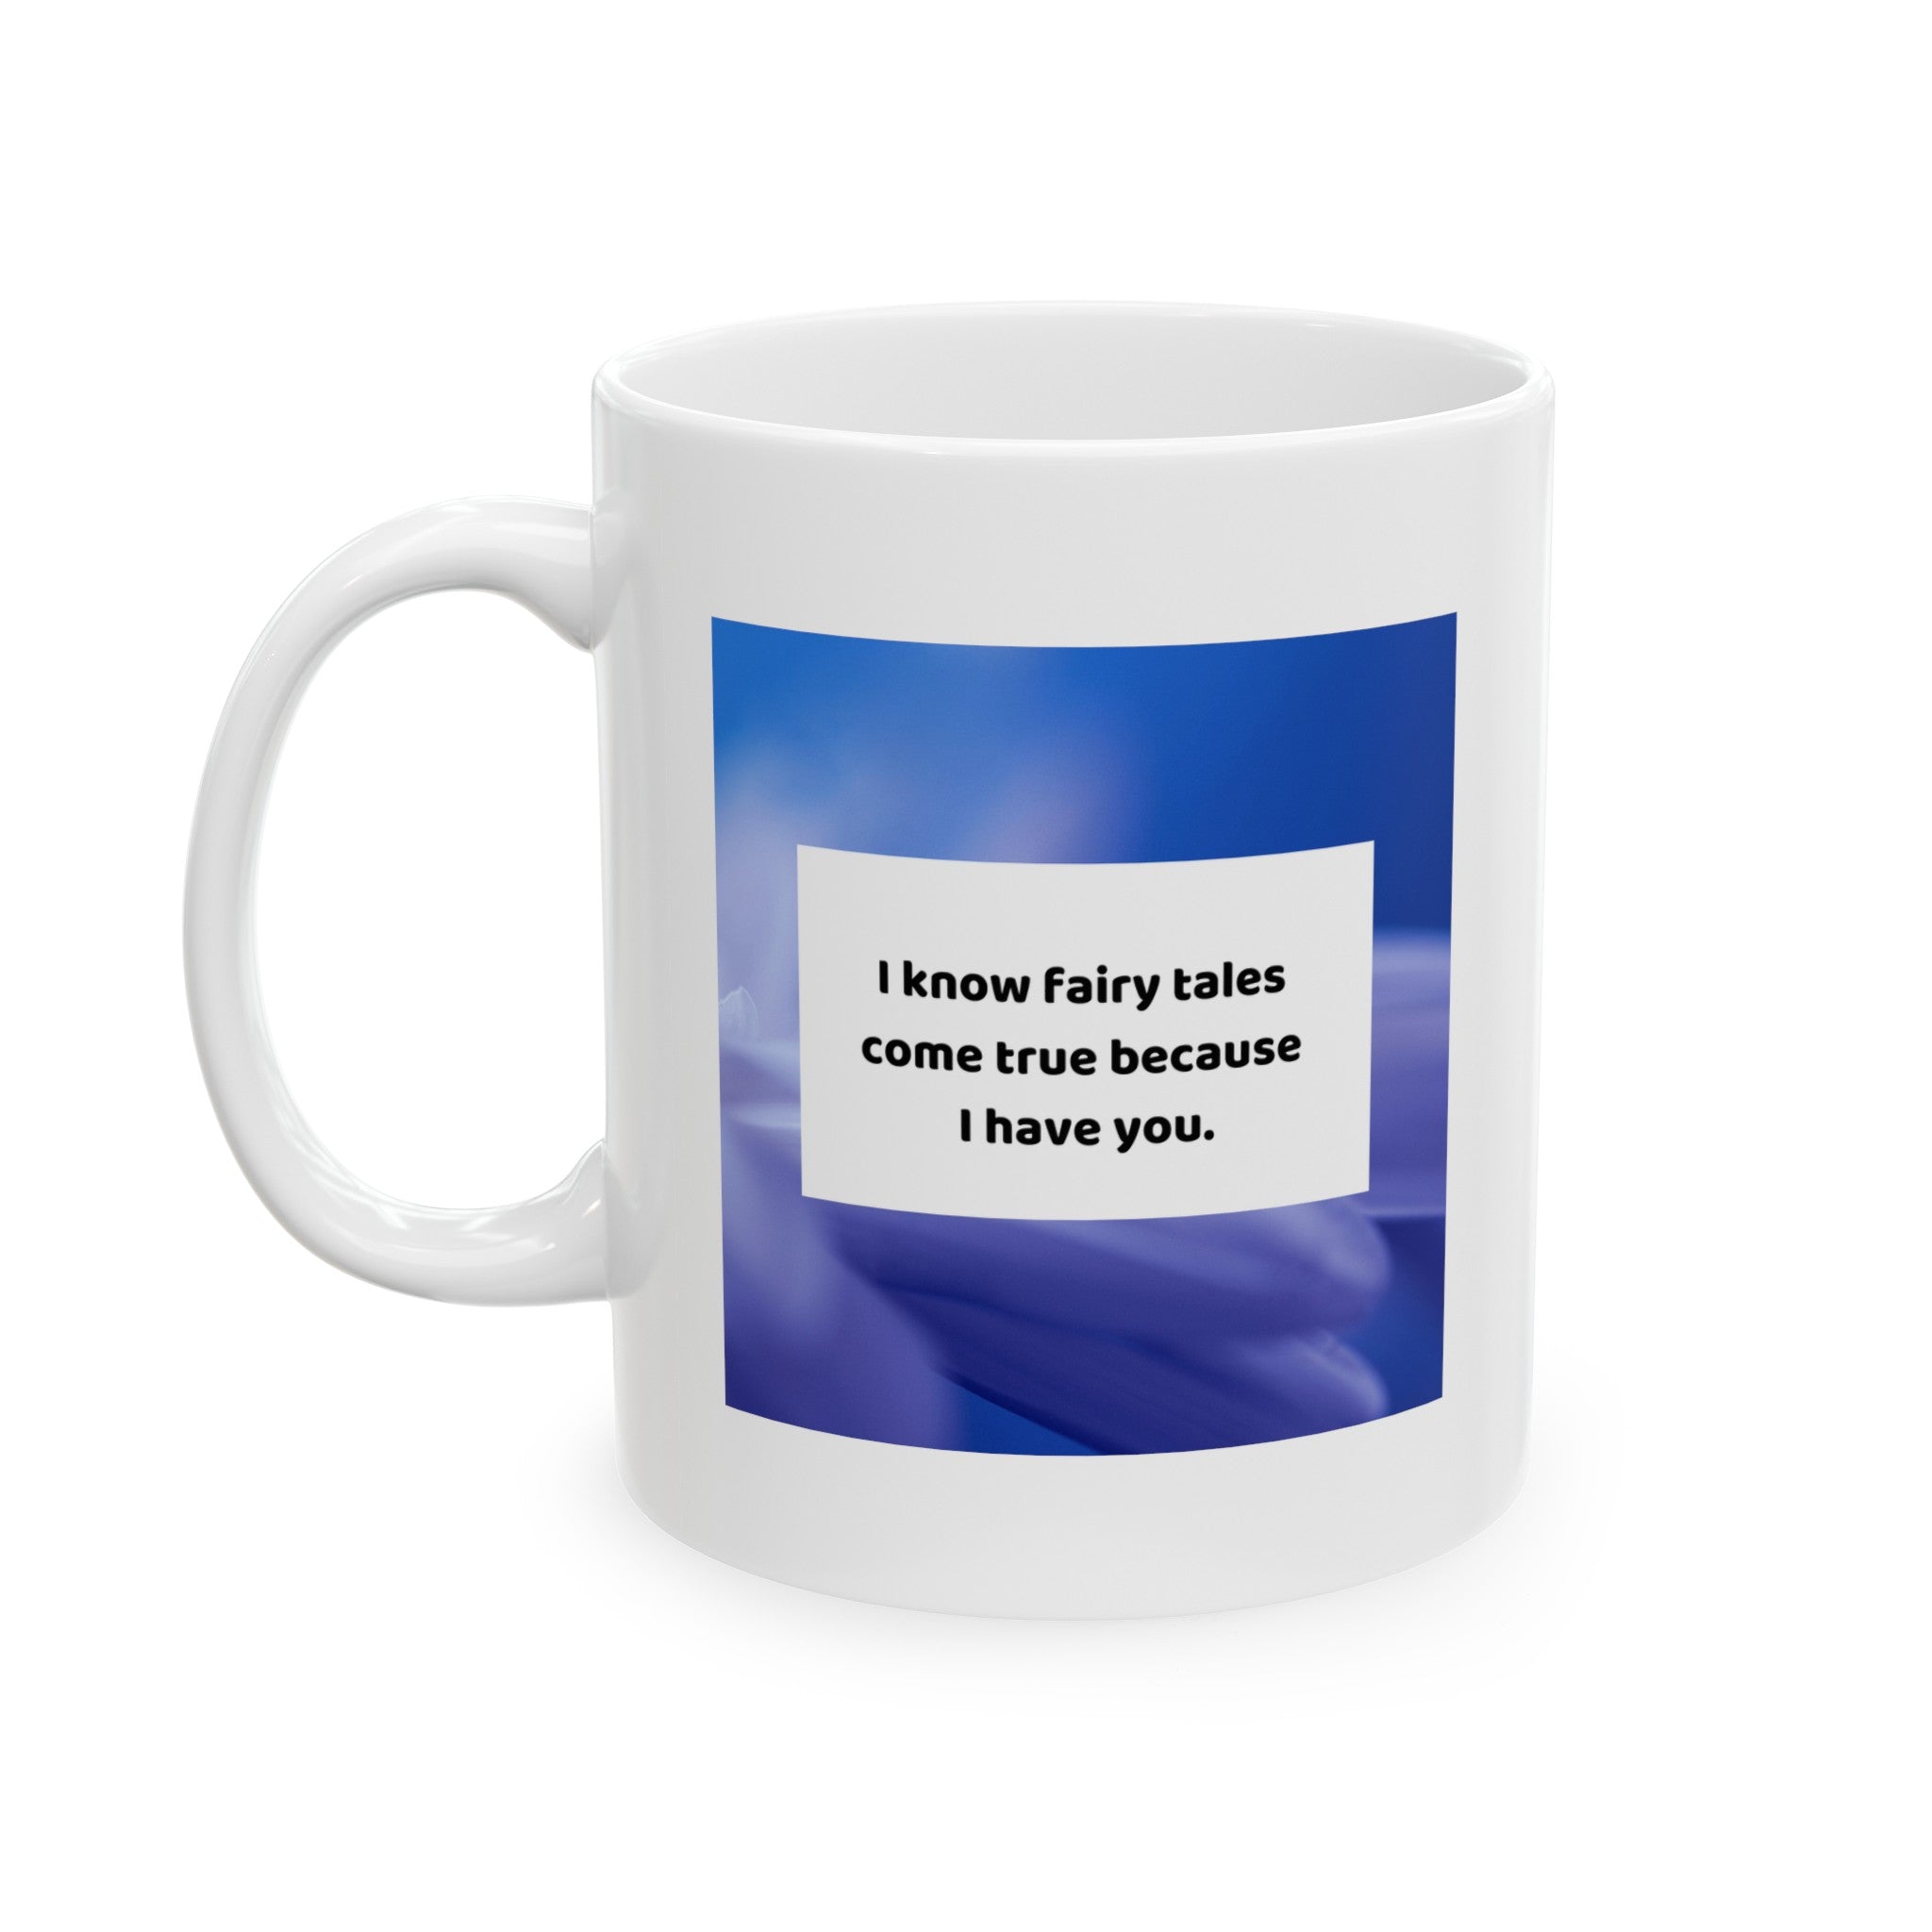 Fairytales come true because I have you - Ceramic Mug, (11oz)